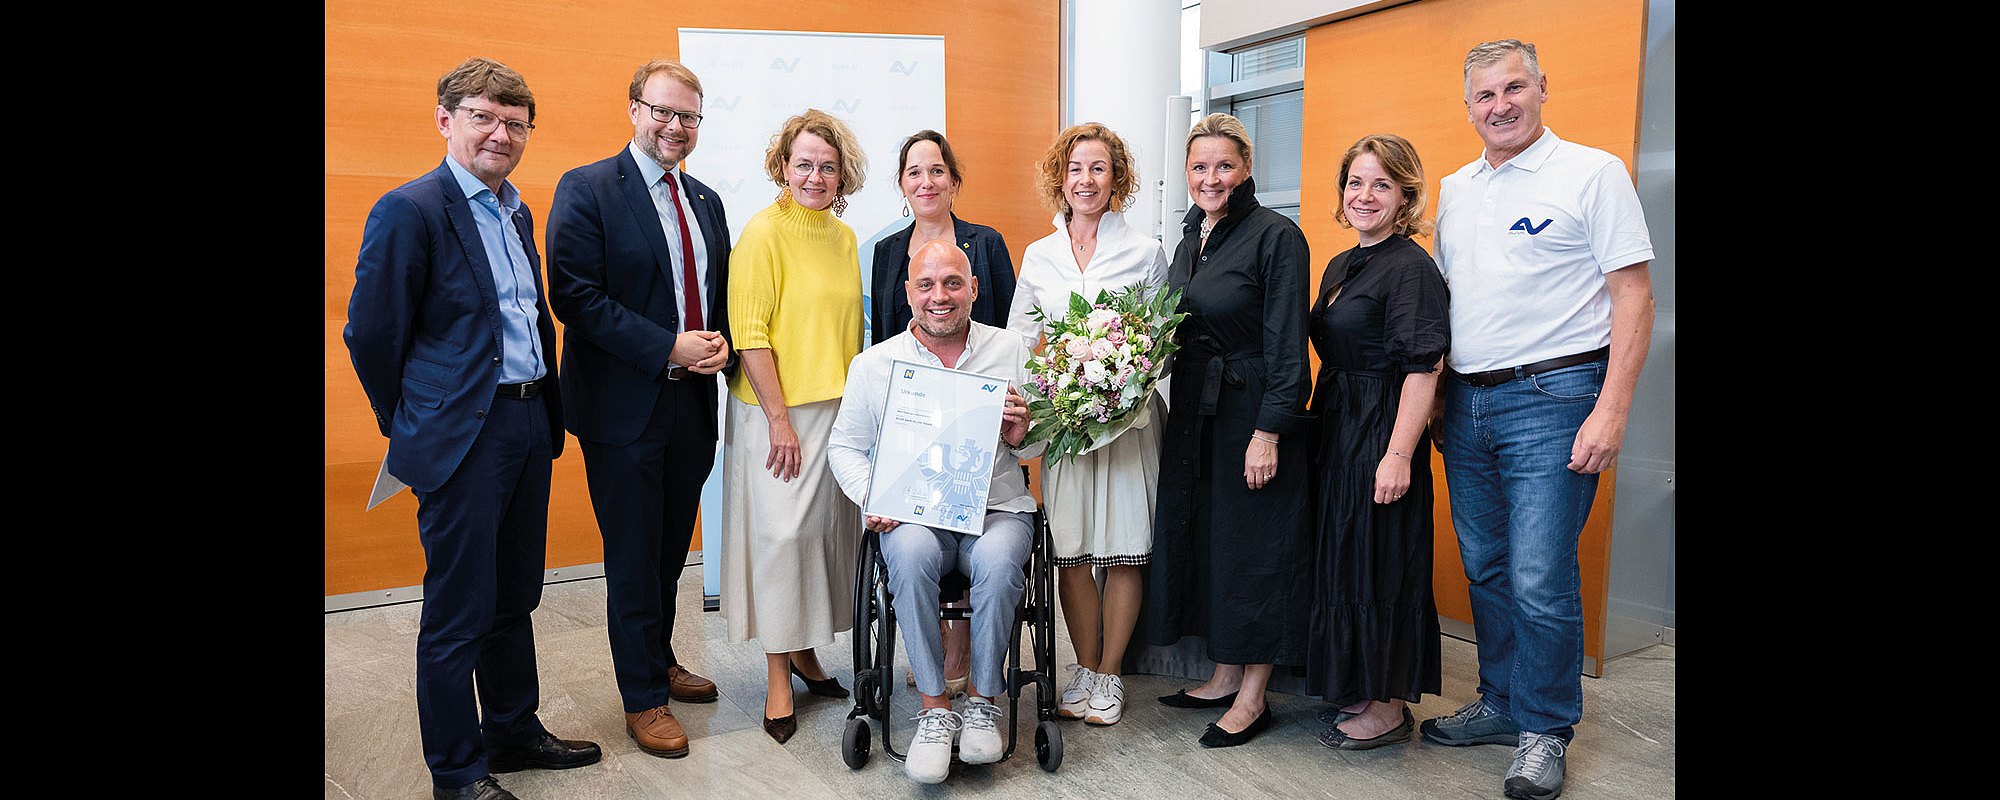 Gruppenbild mit fünf Frauen und vier Männern. Ein Mann im Rollstuhl hält eine gerahmte Auszeichnung ins Bild. Eine Dame daneben hält einen Blumenstrauß.